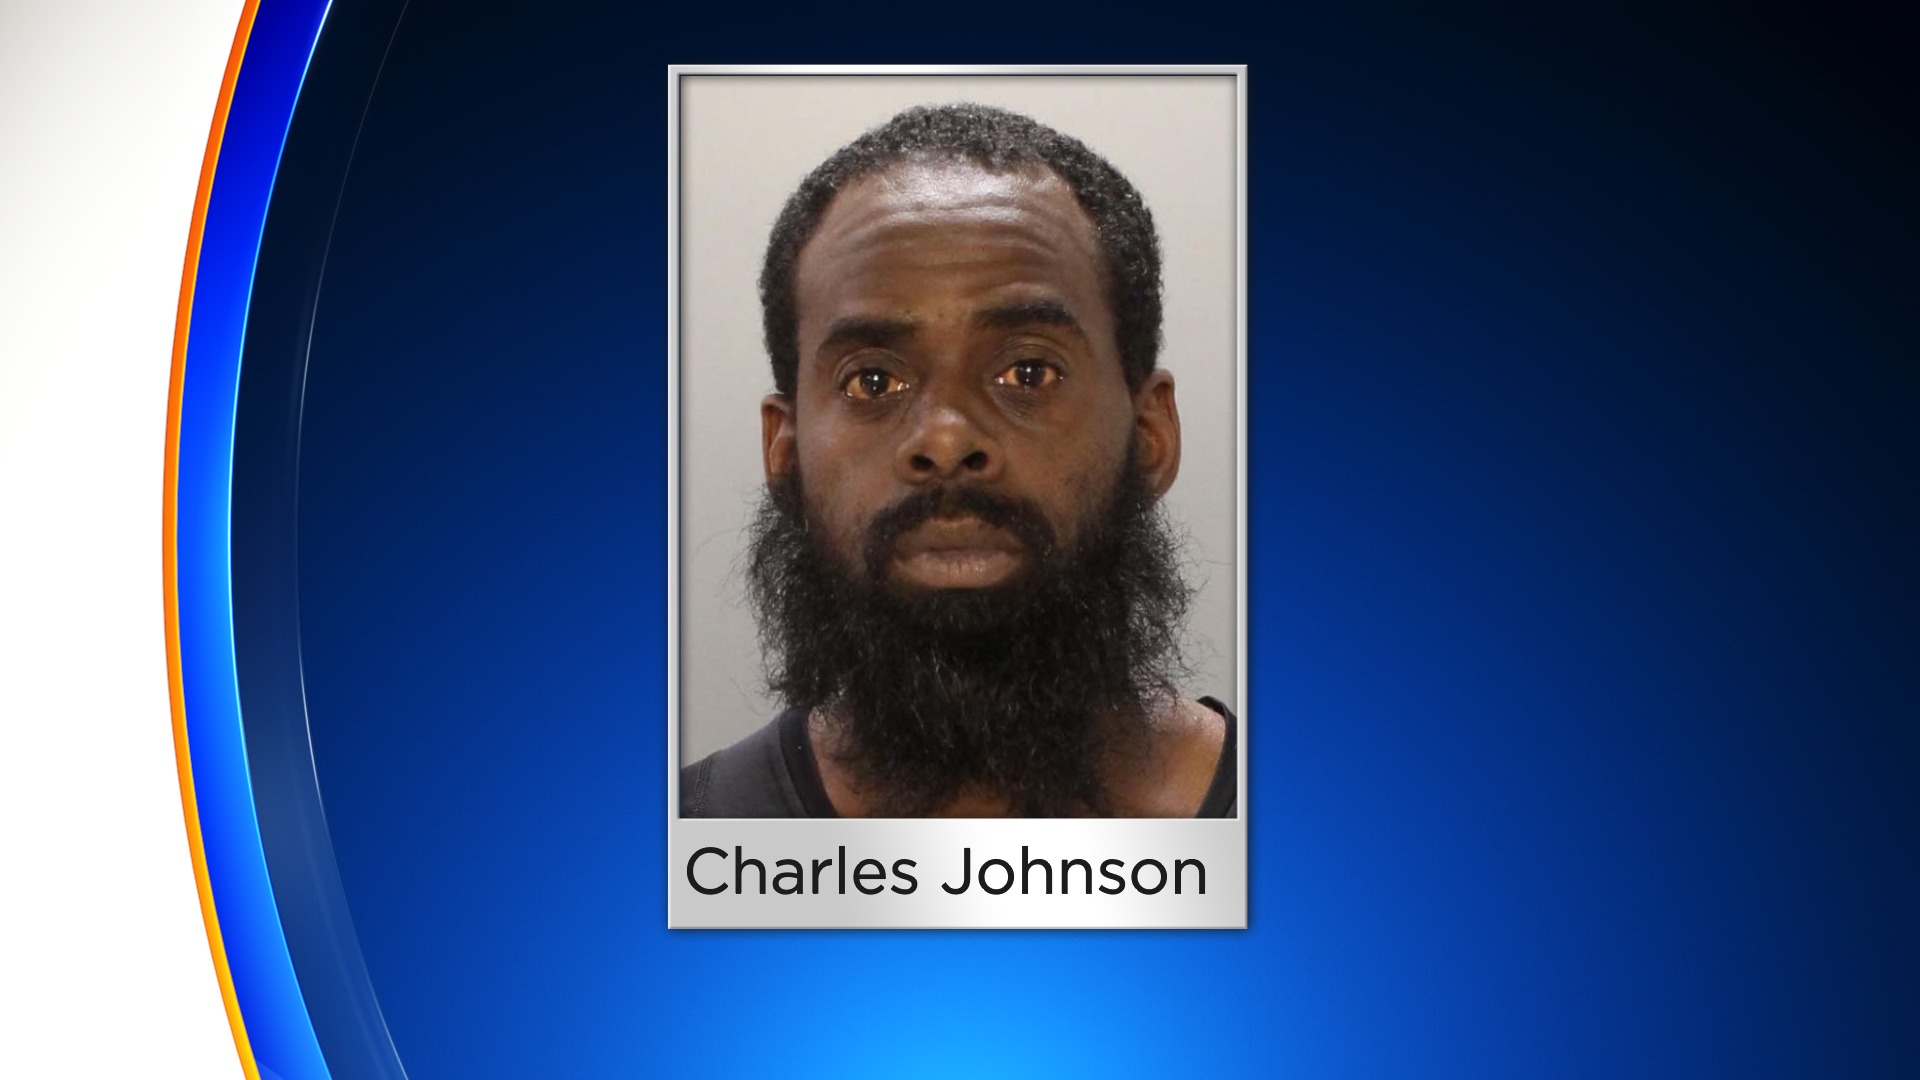 Charles johnson arrested homicide